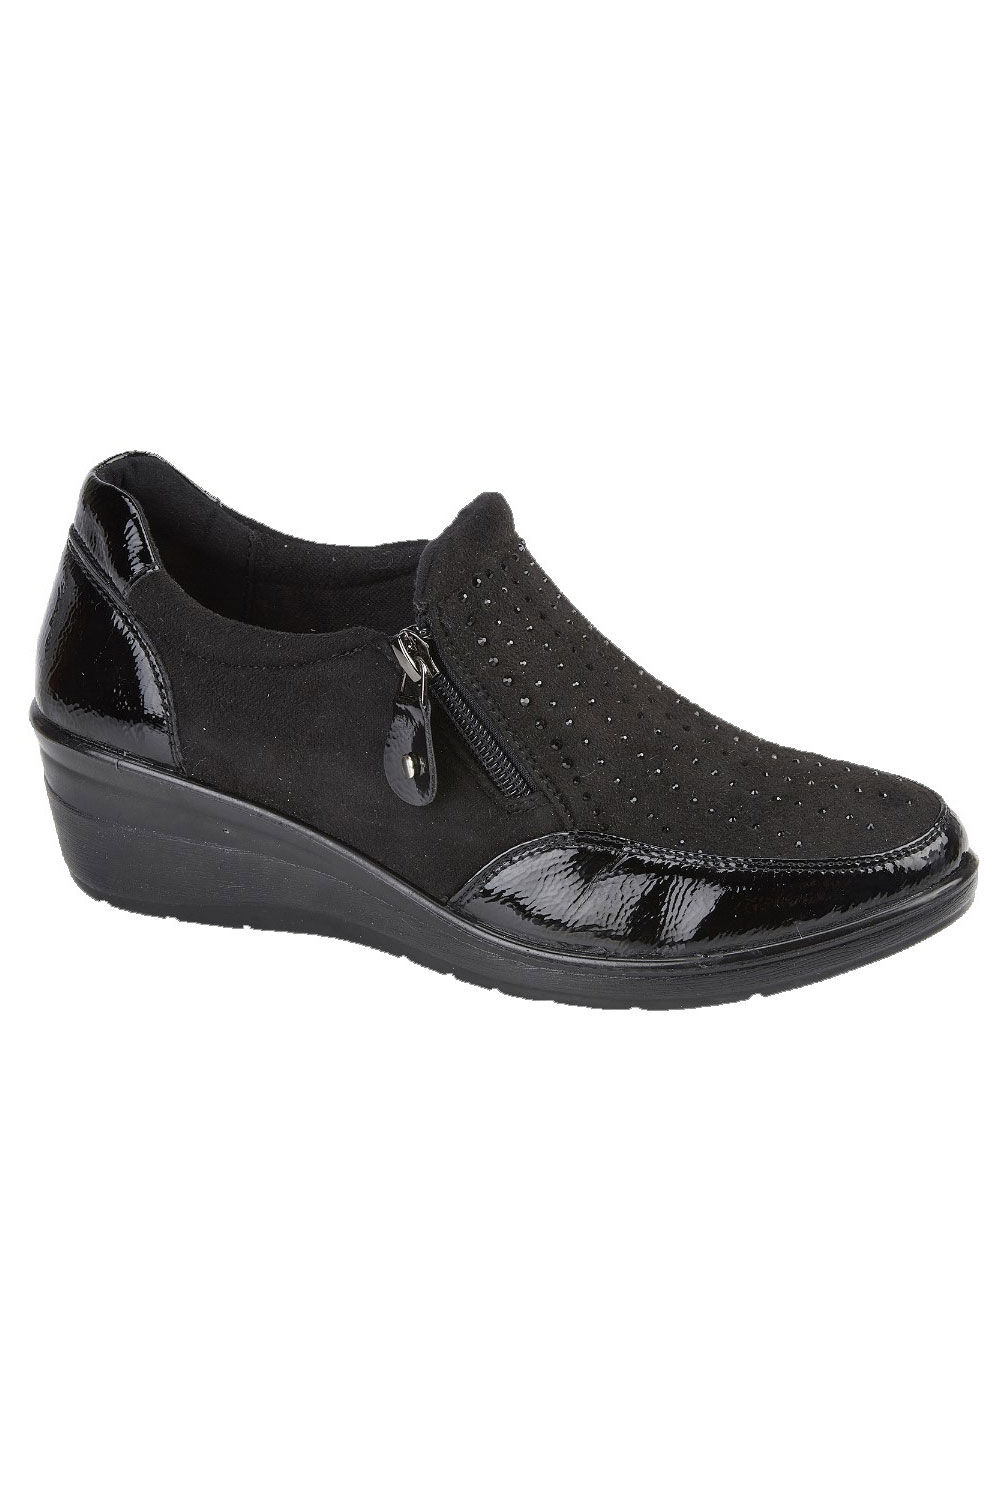 Jo & Joe Black - Diamante Wedge Heel Ankle Boots, Size: 7